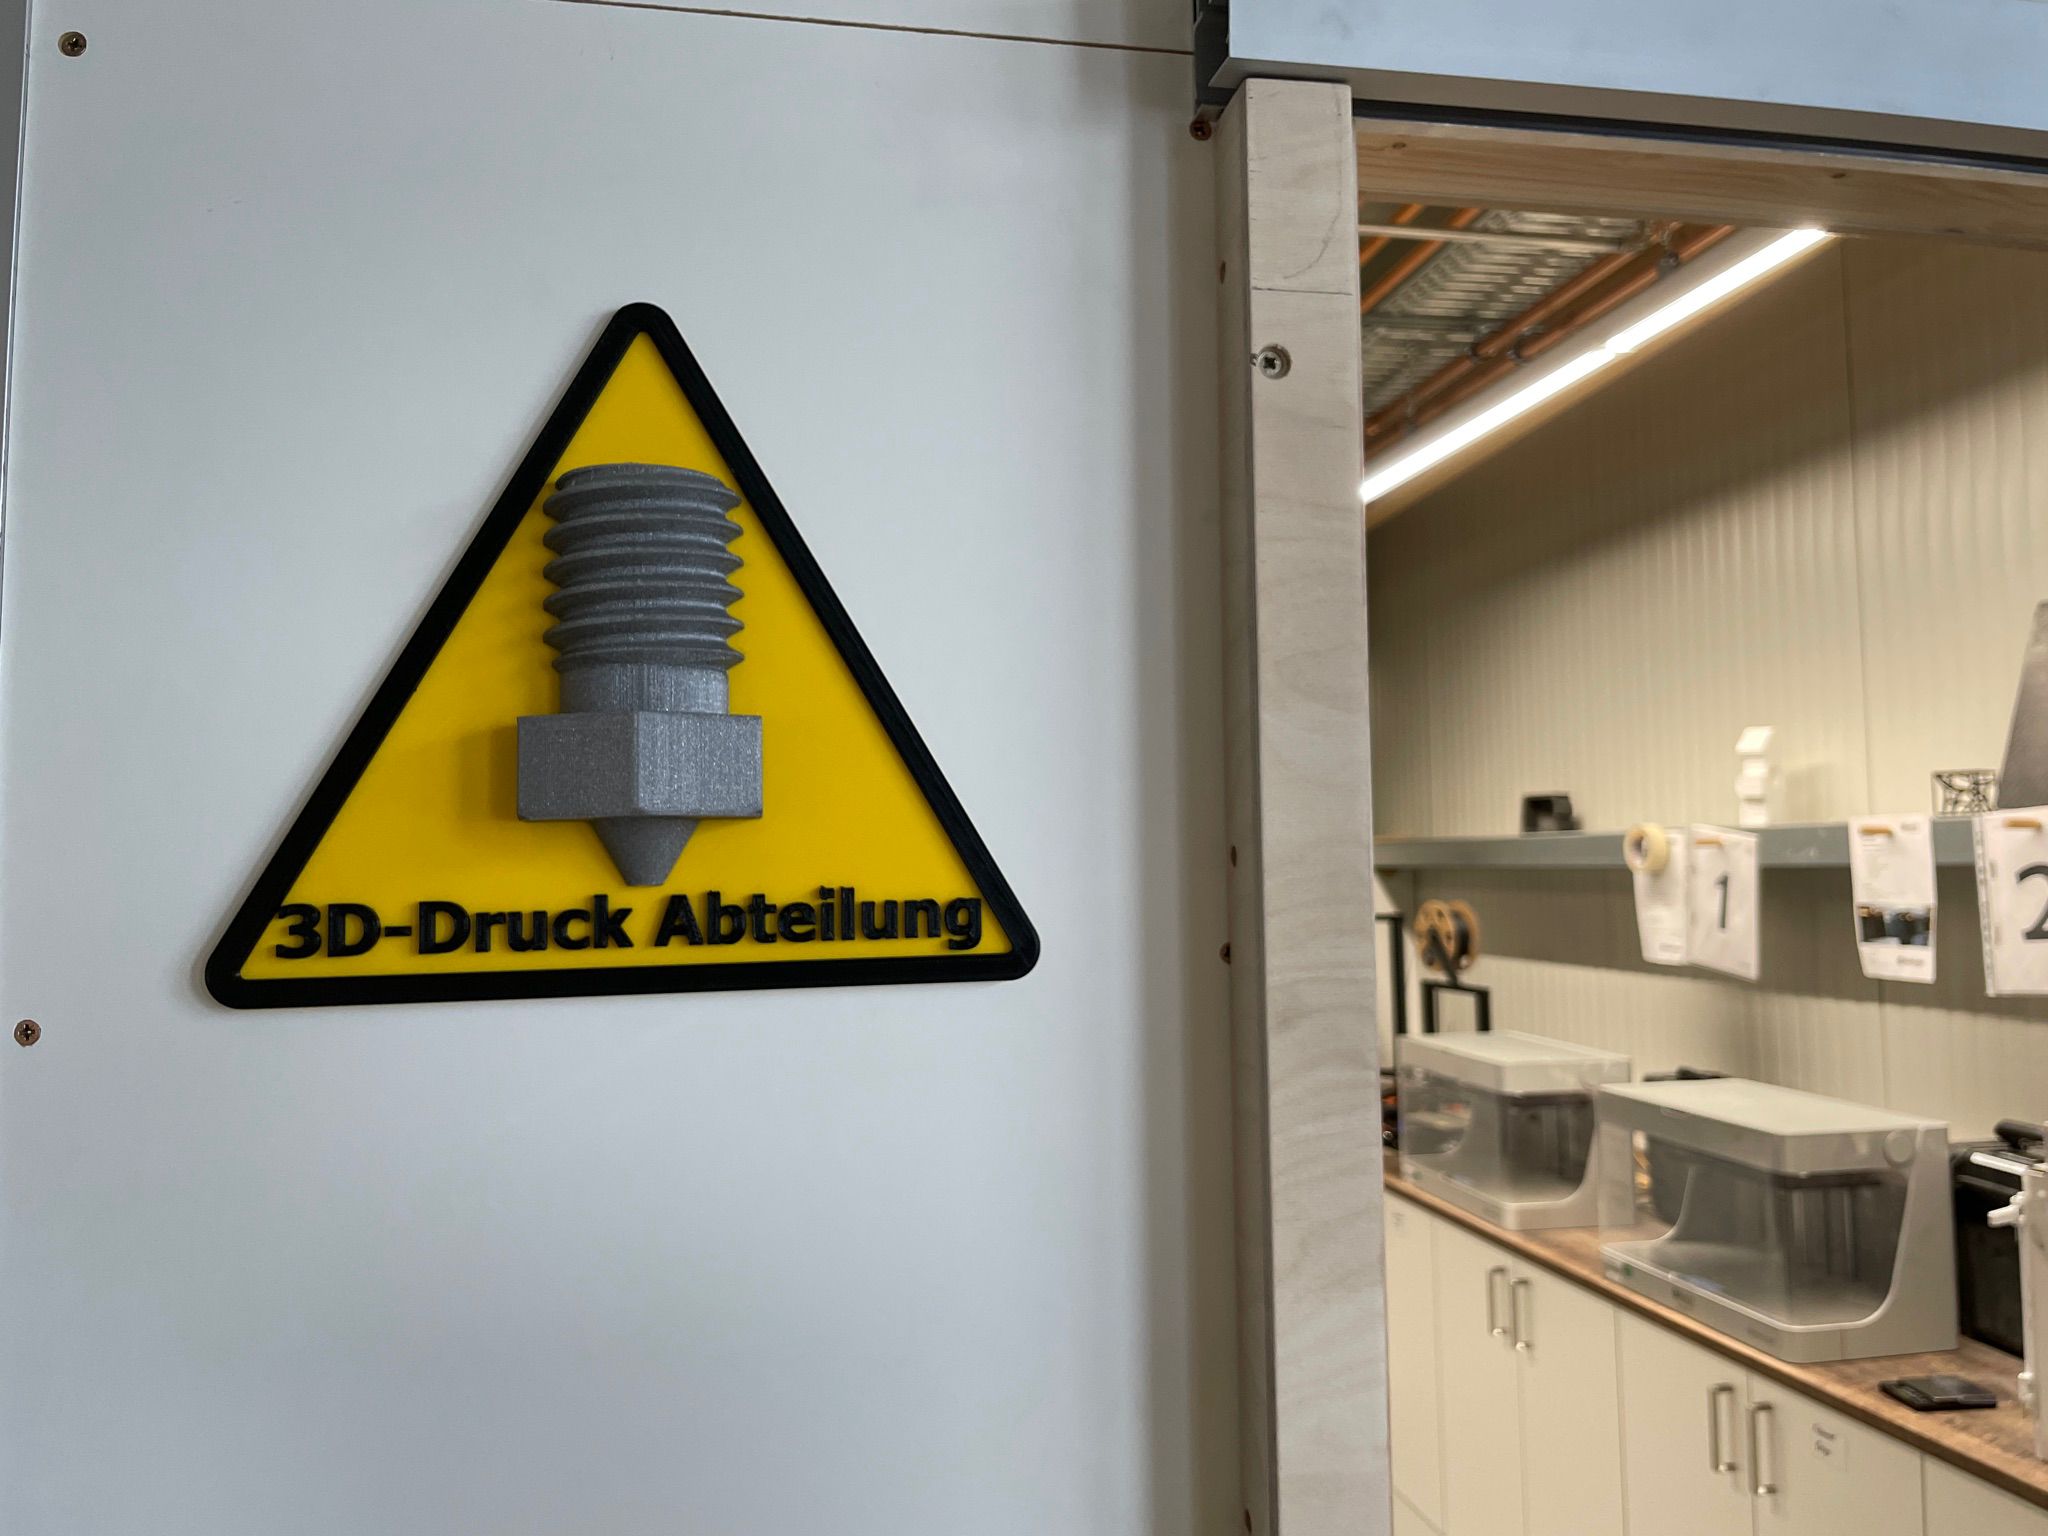 3D Druck Abteilung Schild (also in English)